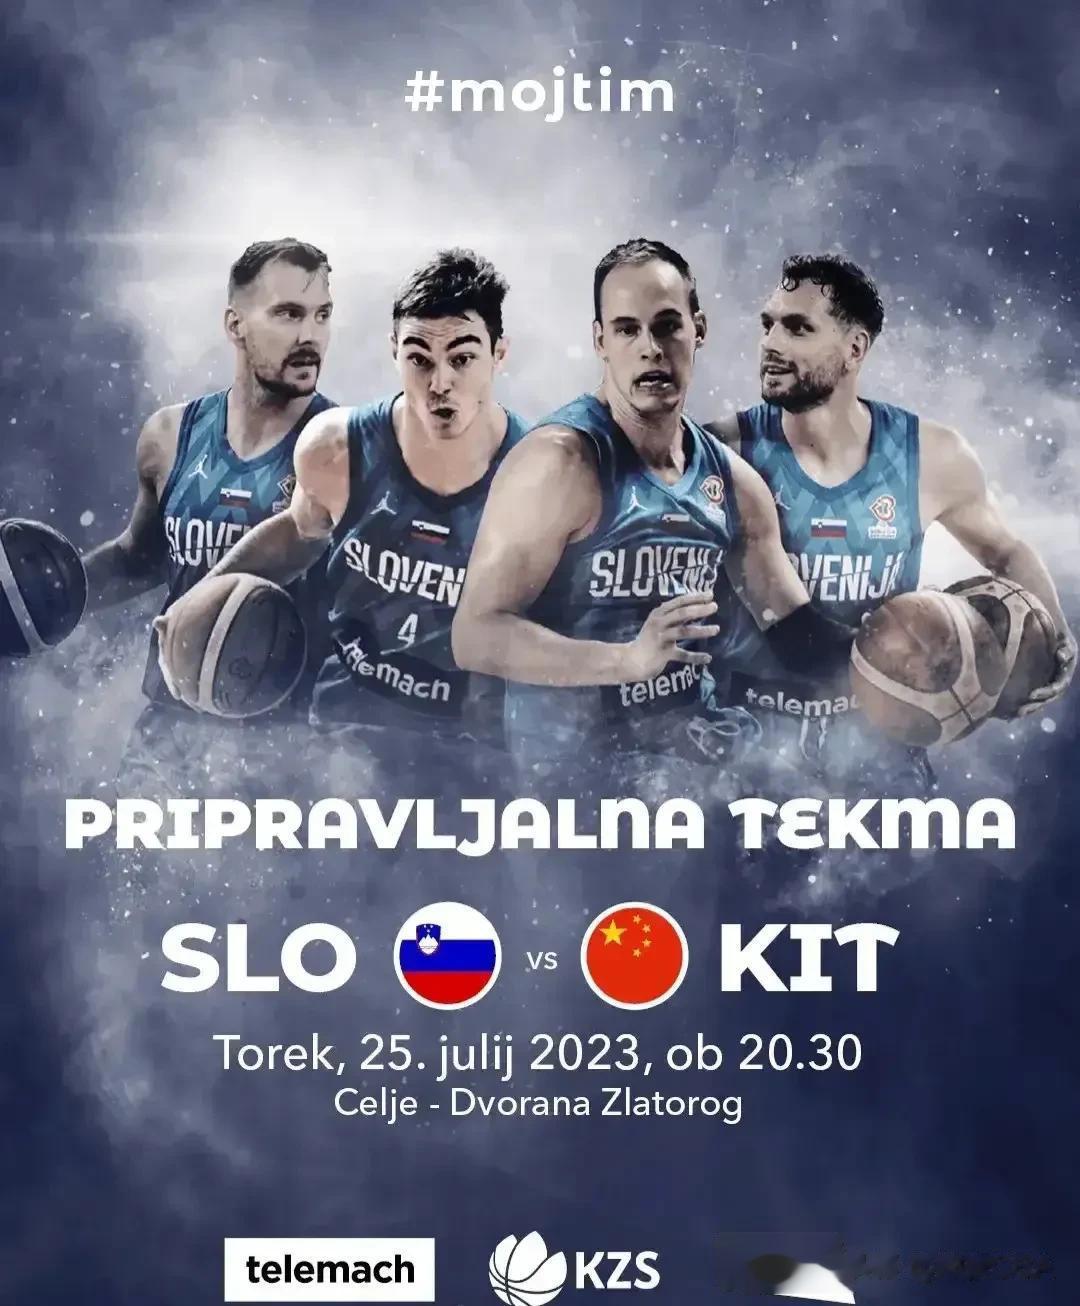 男篮热身赛第三场7月26日凌晨2:30打响对阵斯洛文尼亚

此前对阵克罗地亚的两